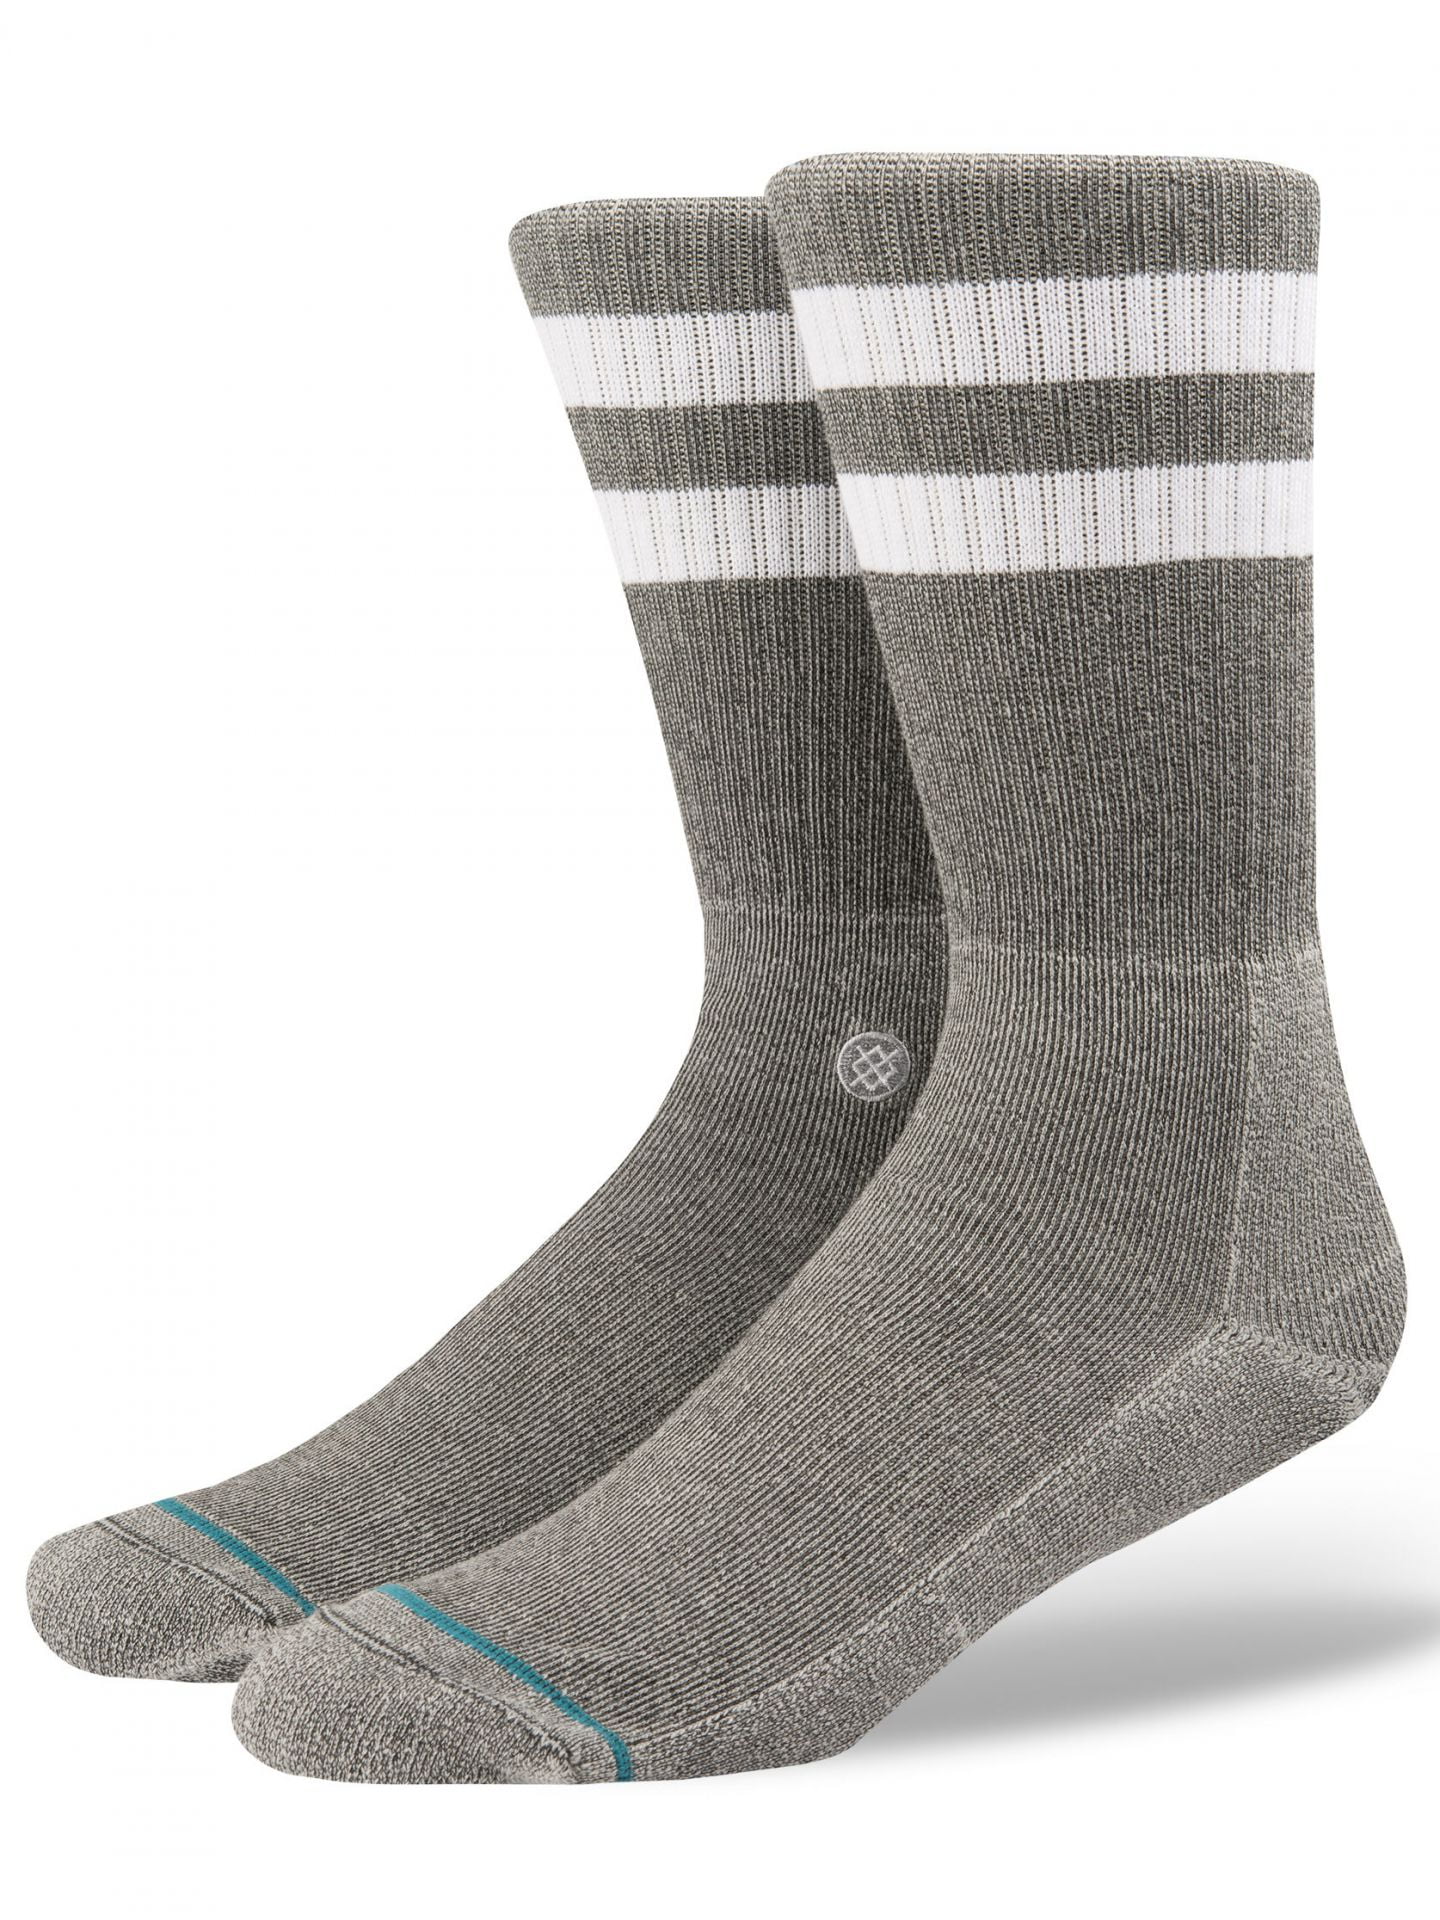 5 Pairs of Stance Kids Socks L/XL Size 6-8.5 